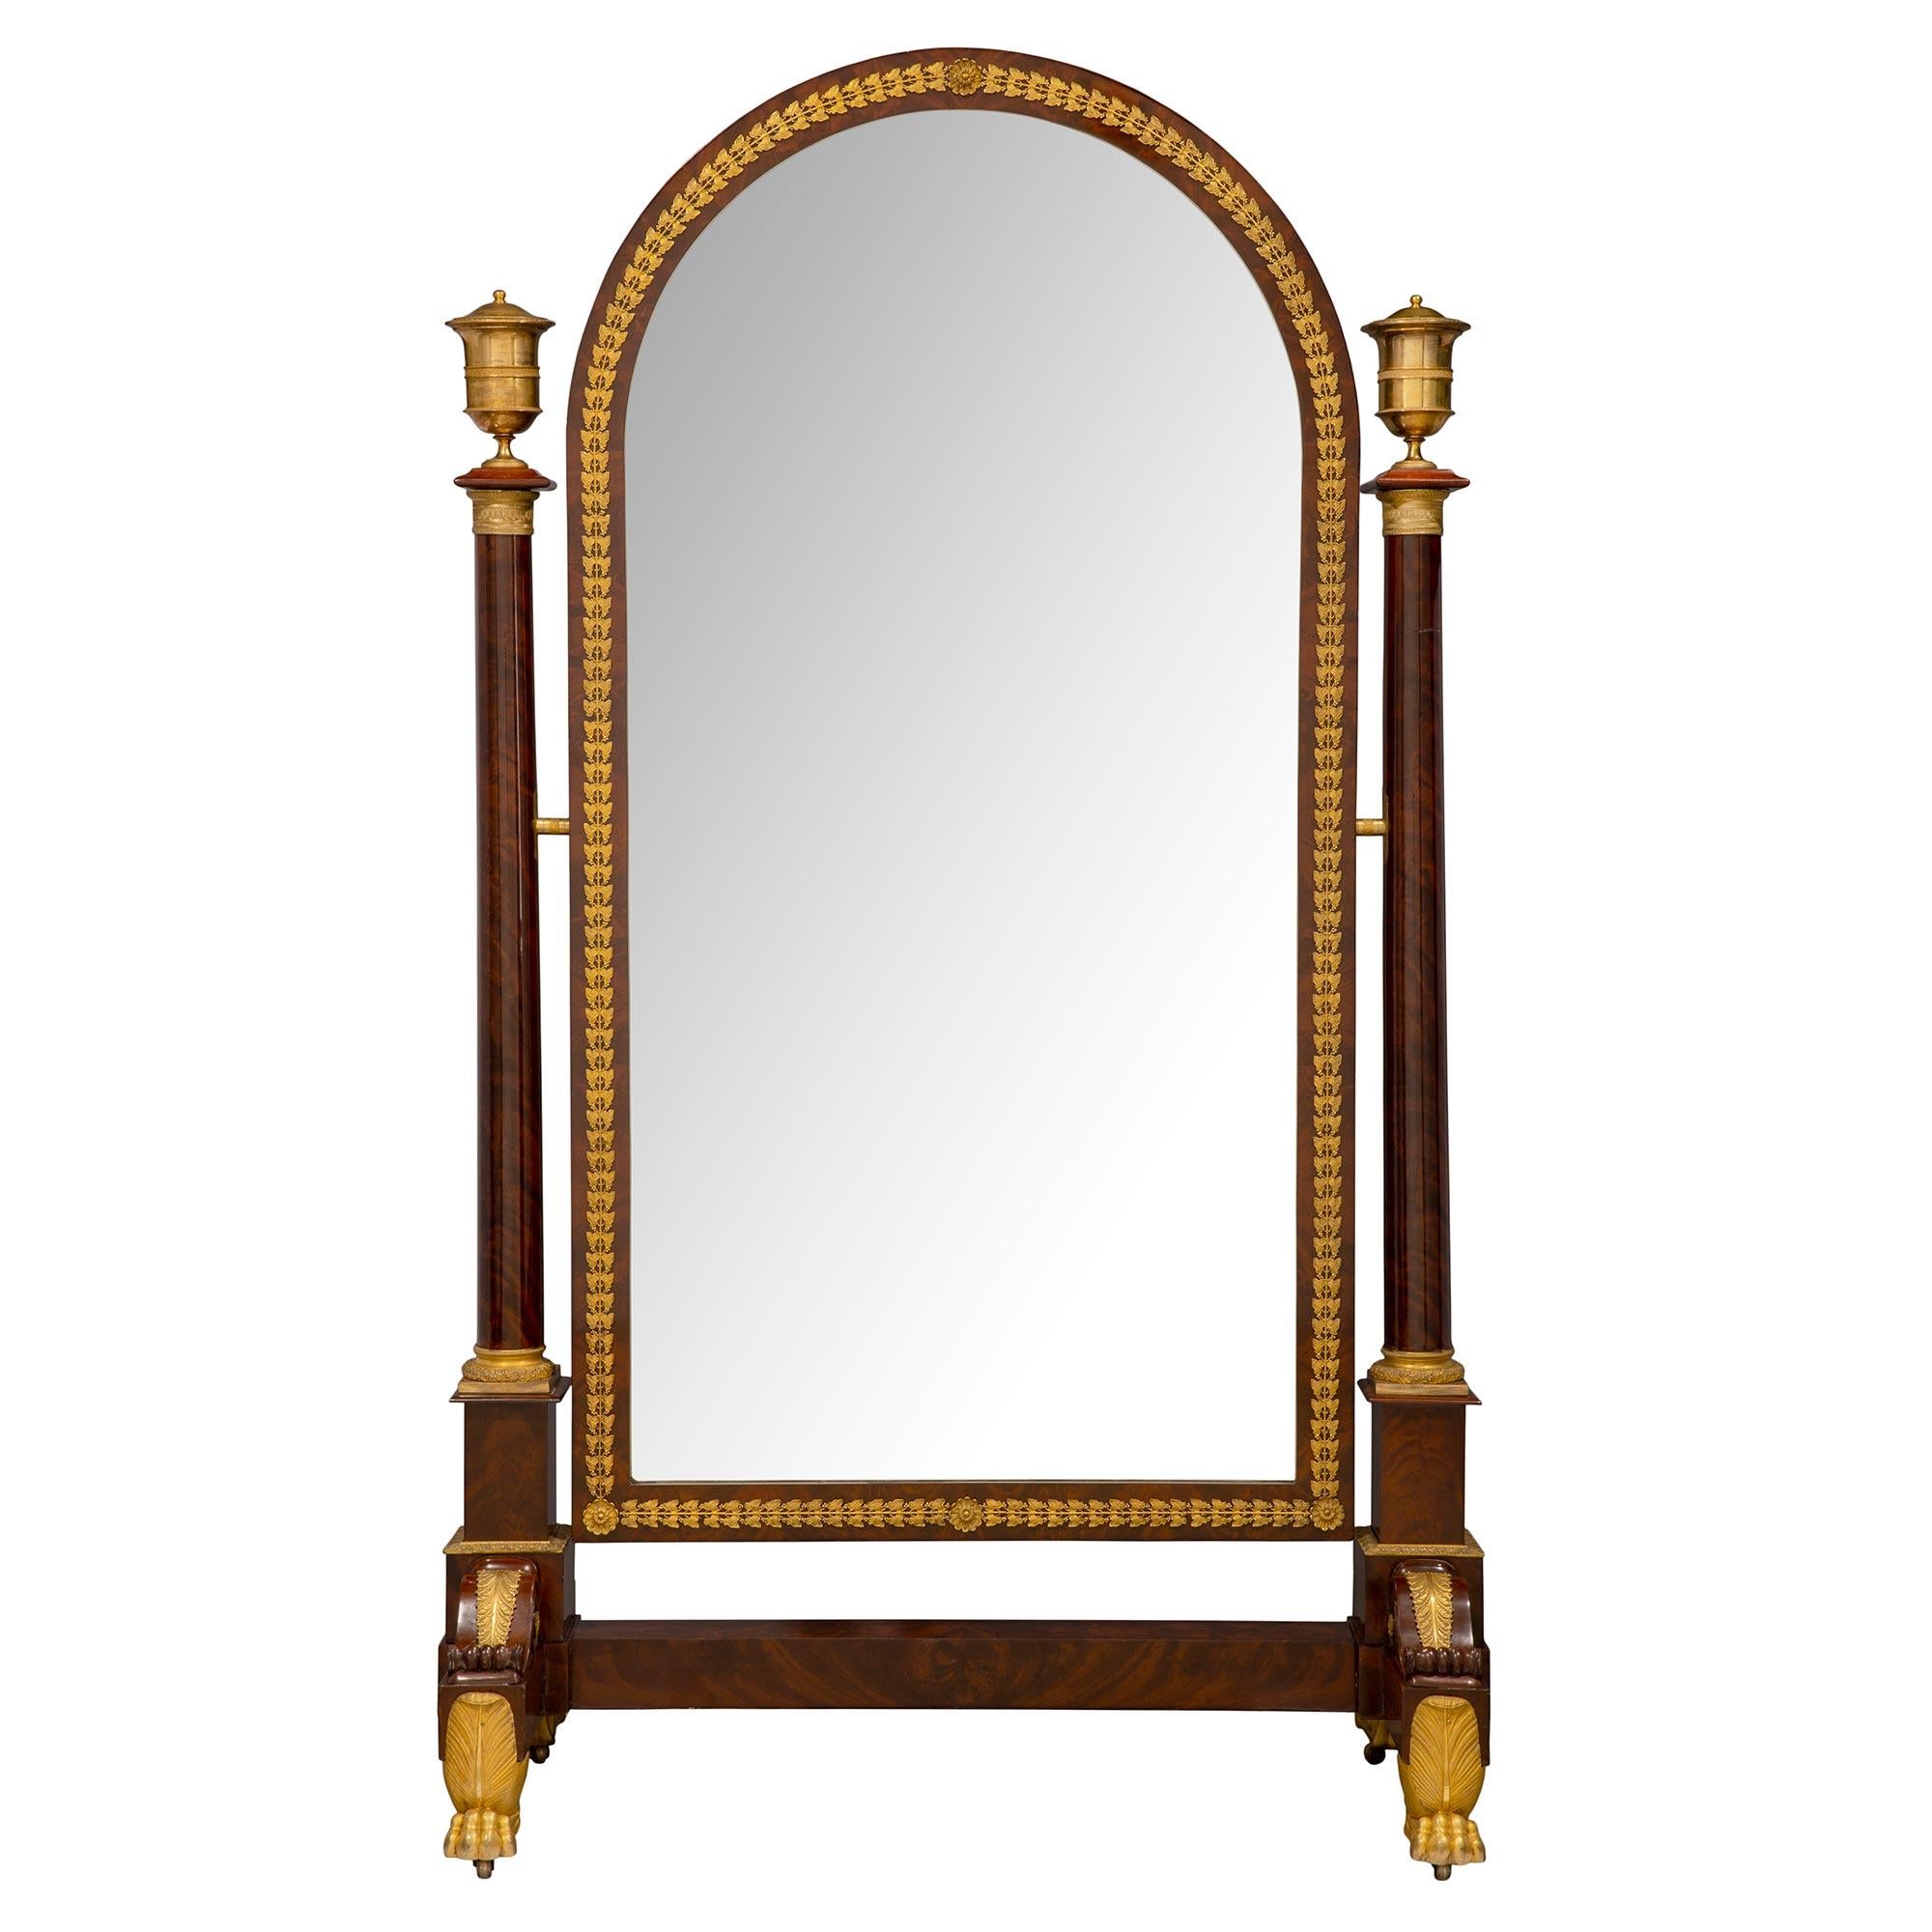 Un sensationnel miroir Psyché en acajou monté en bronze doré, d'époque Empire, du XIXe siècle. Le miroir est surélevé par un impressionnant support en bronze doré, sous une épaisse base en acajou et des sculptures en 